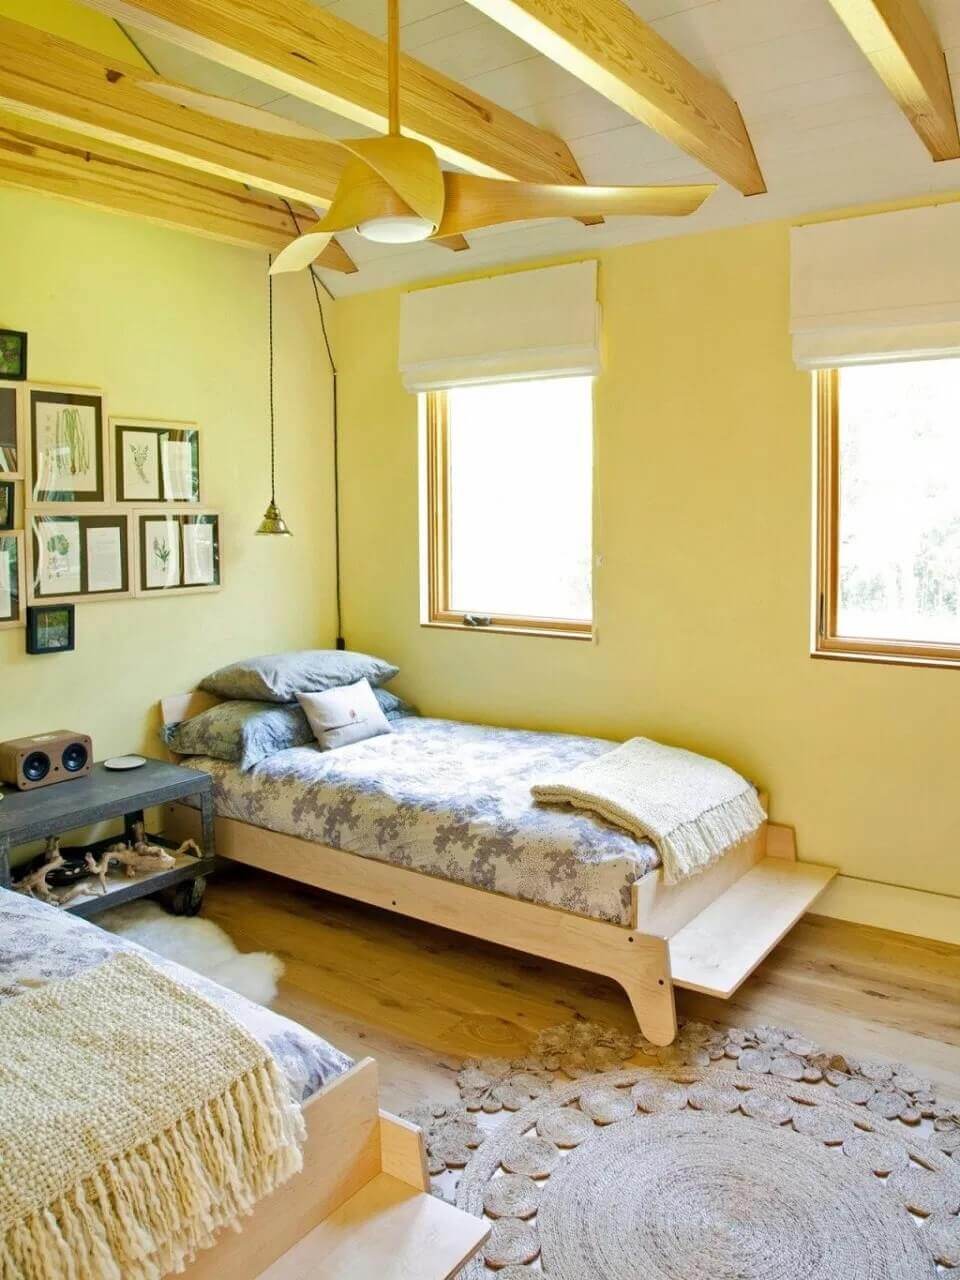 Hình ảnh: Thiết kế nội thất phòng ngủ khách sạn mini với tone màu vàng